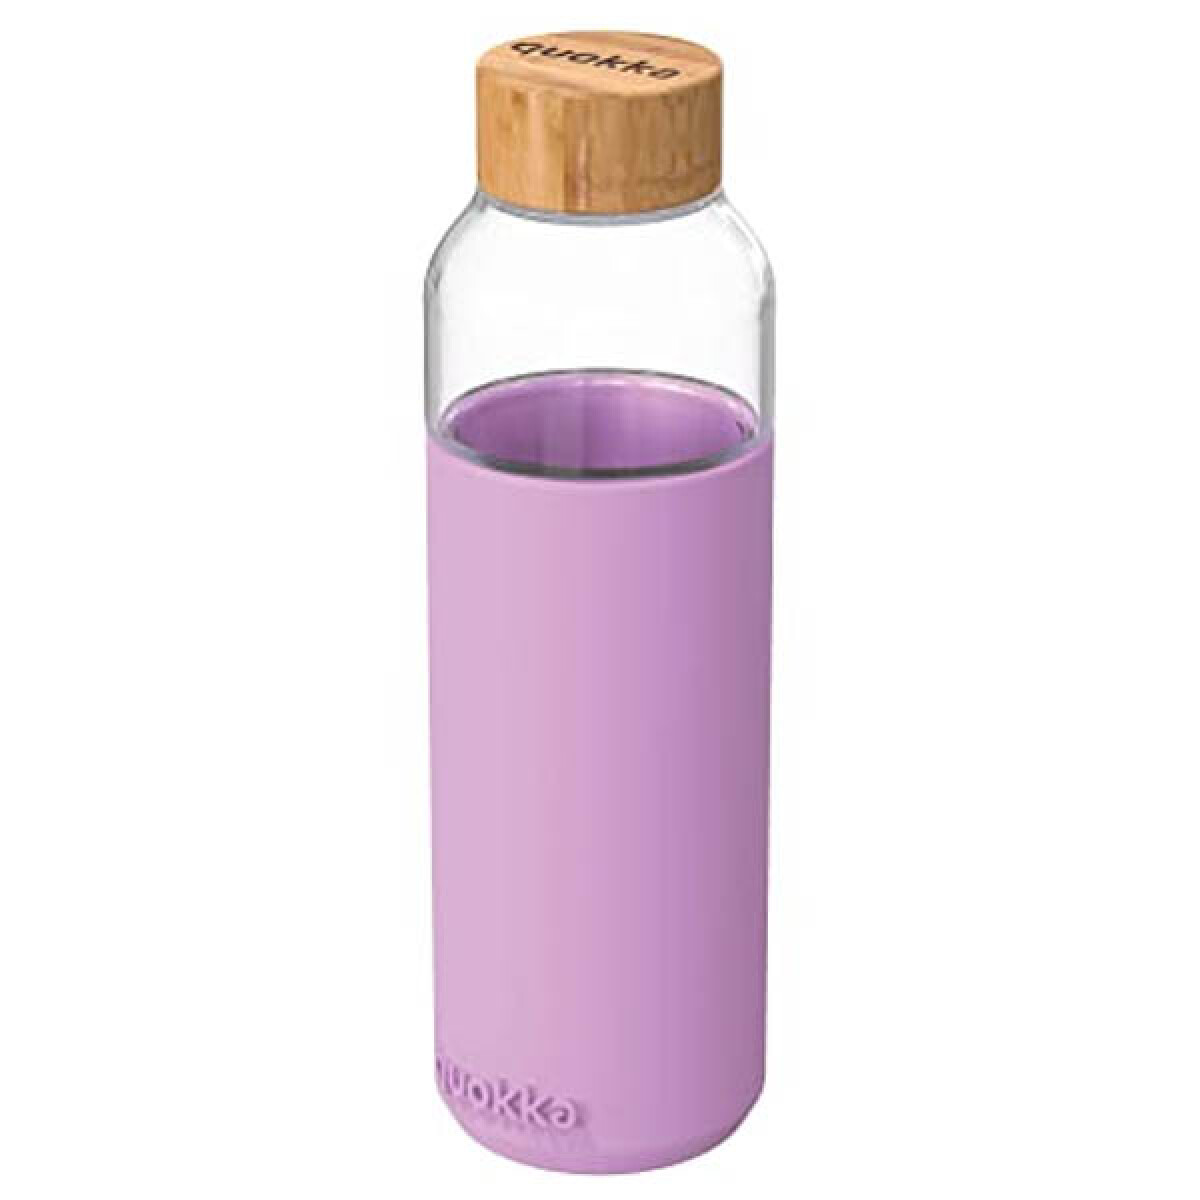 Botella de Vidrio Quokka Flow - Varios Colores - Color Violeta 